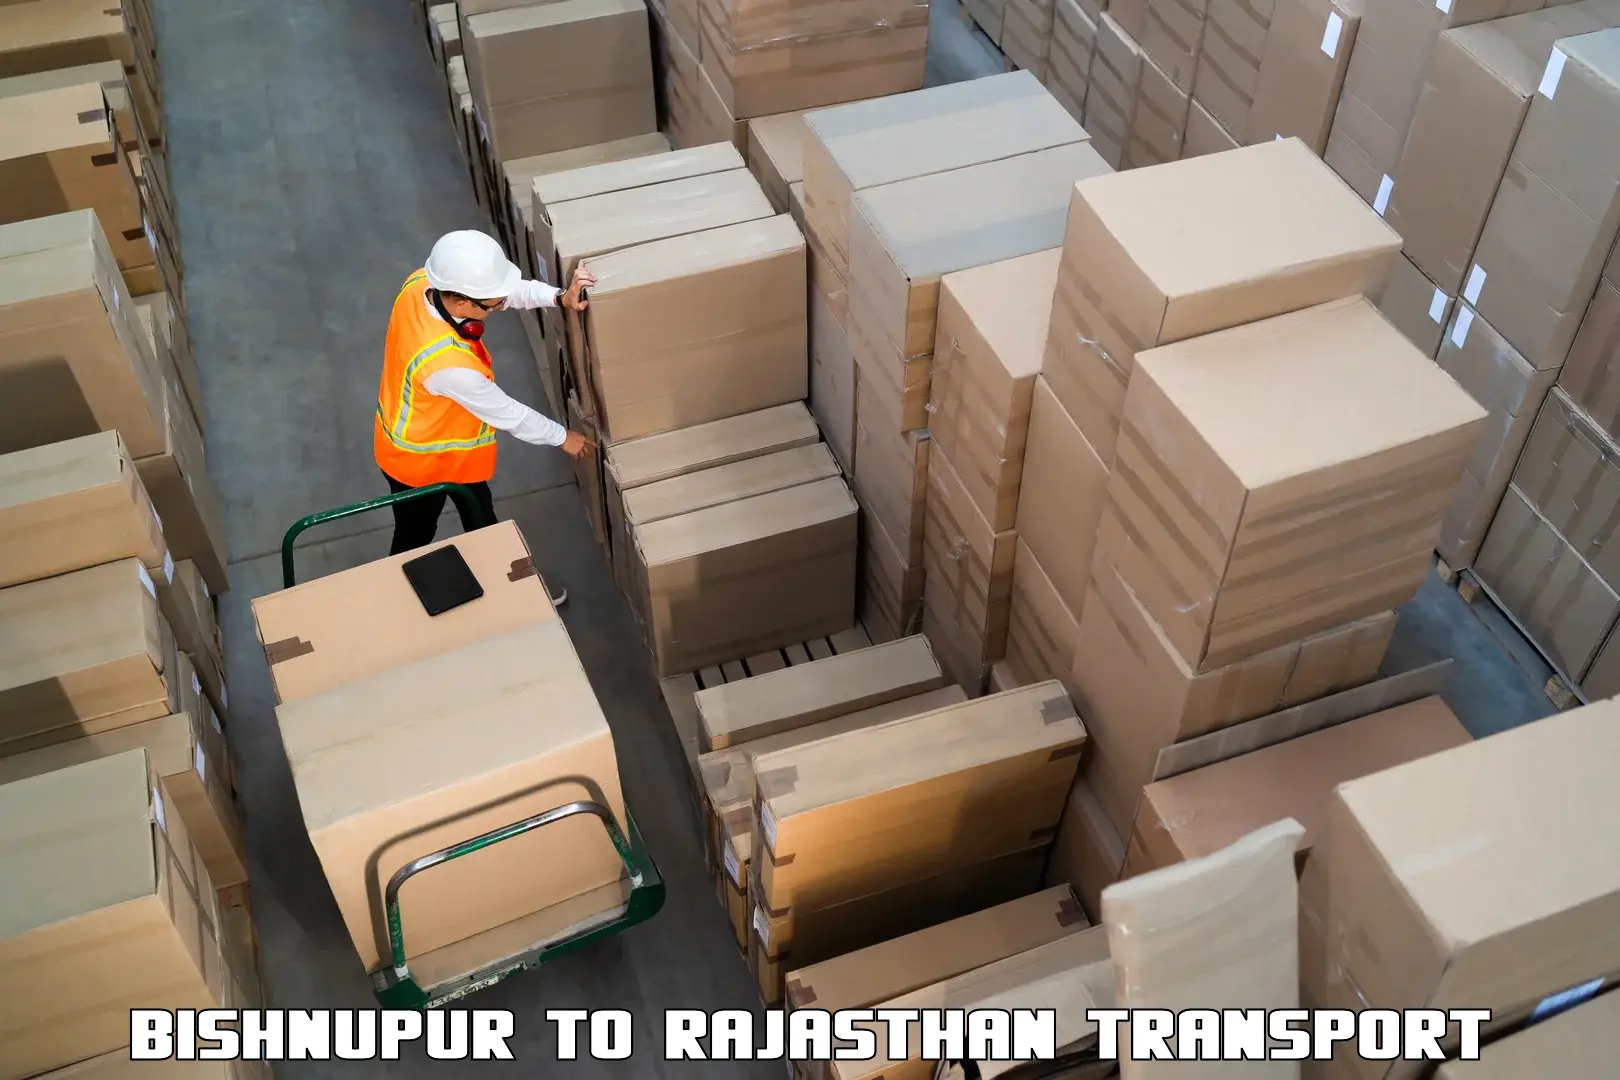 Furniture transport service in Bishnupur to Rajasthan